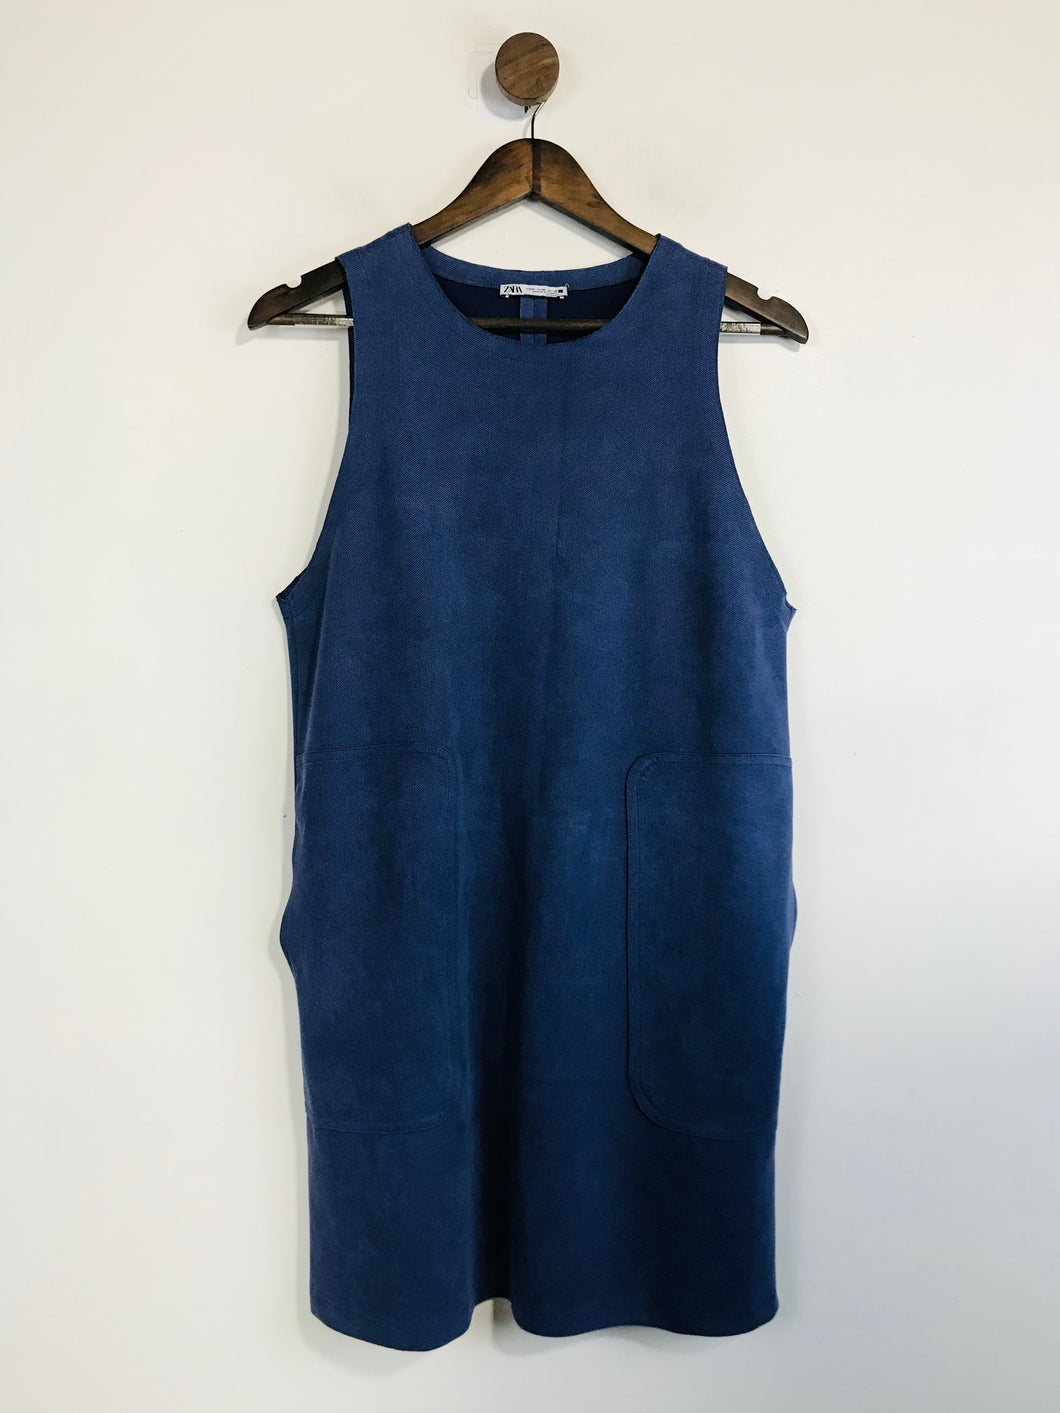 Zara Women's Faux Suede Shift Dress | M UK10-12 | Blue